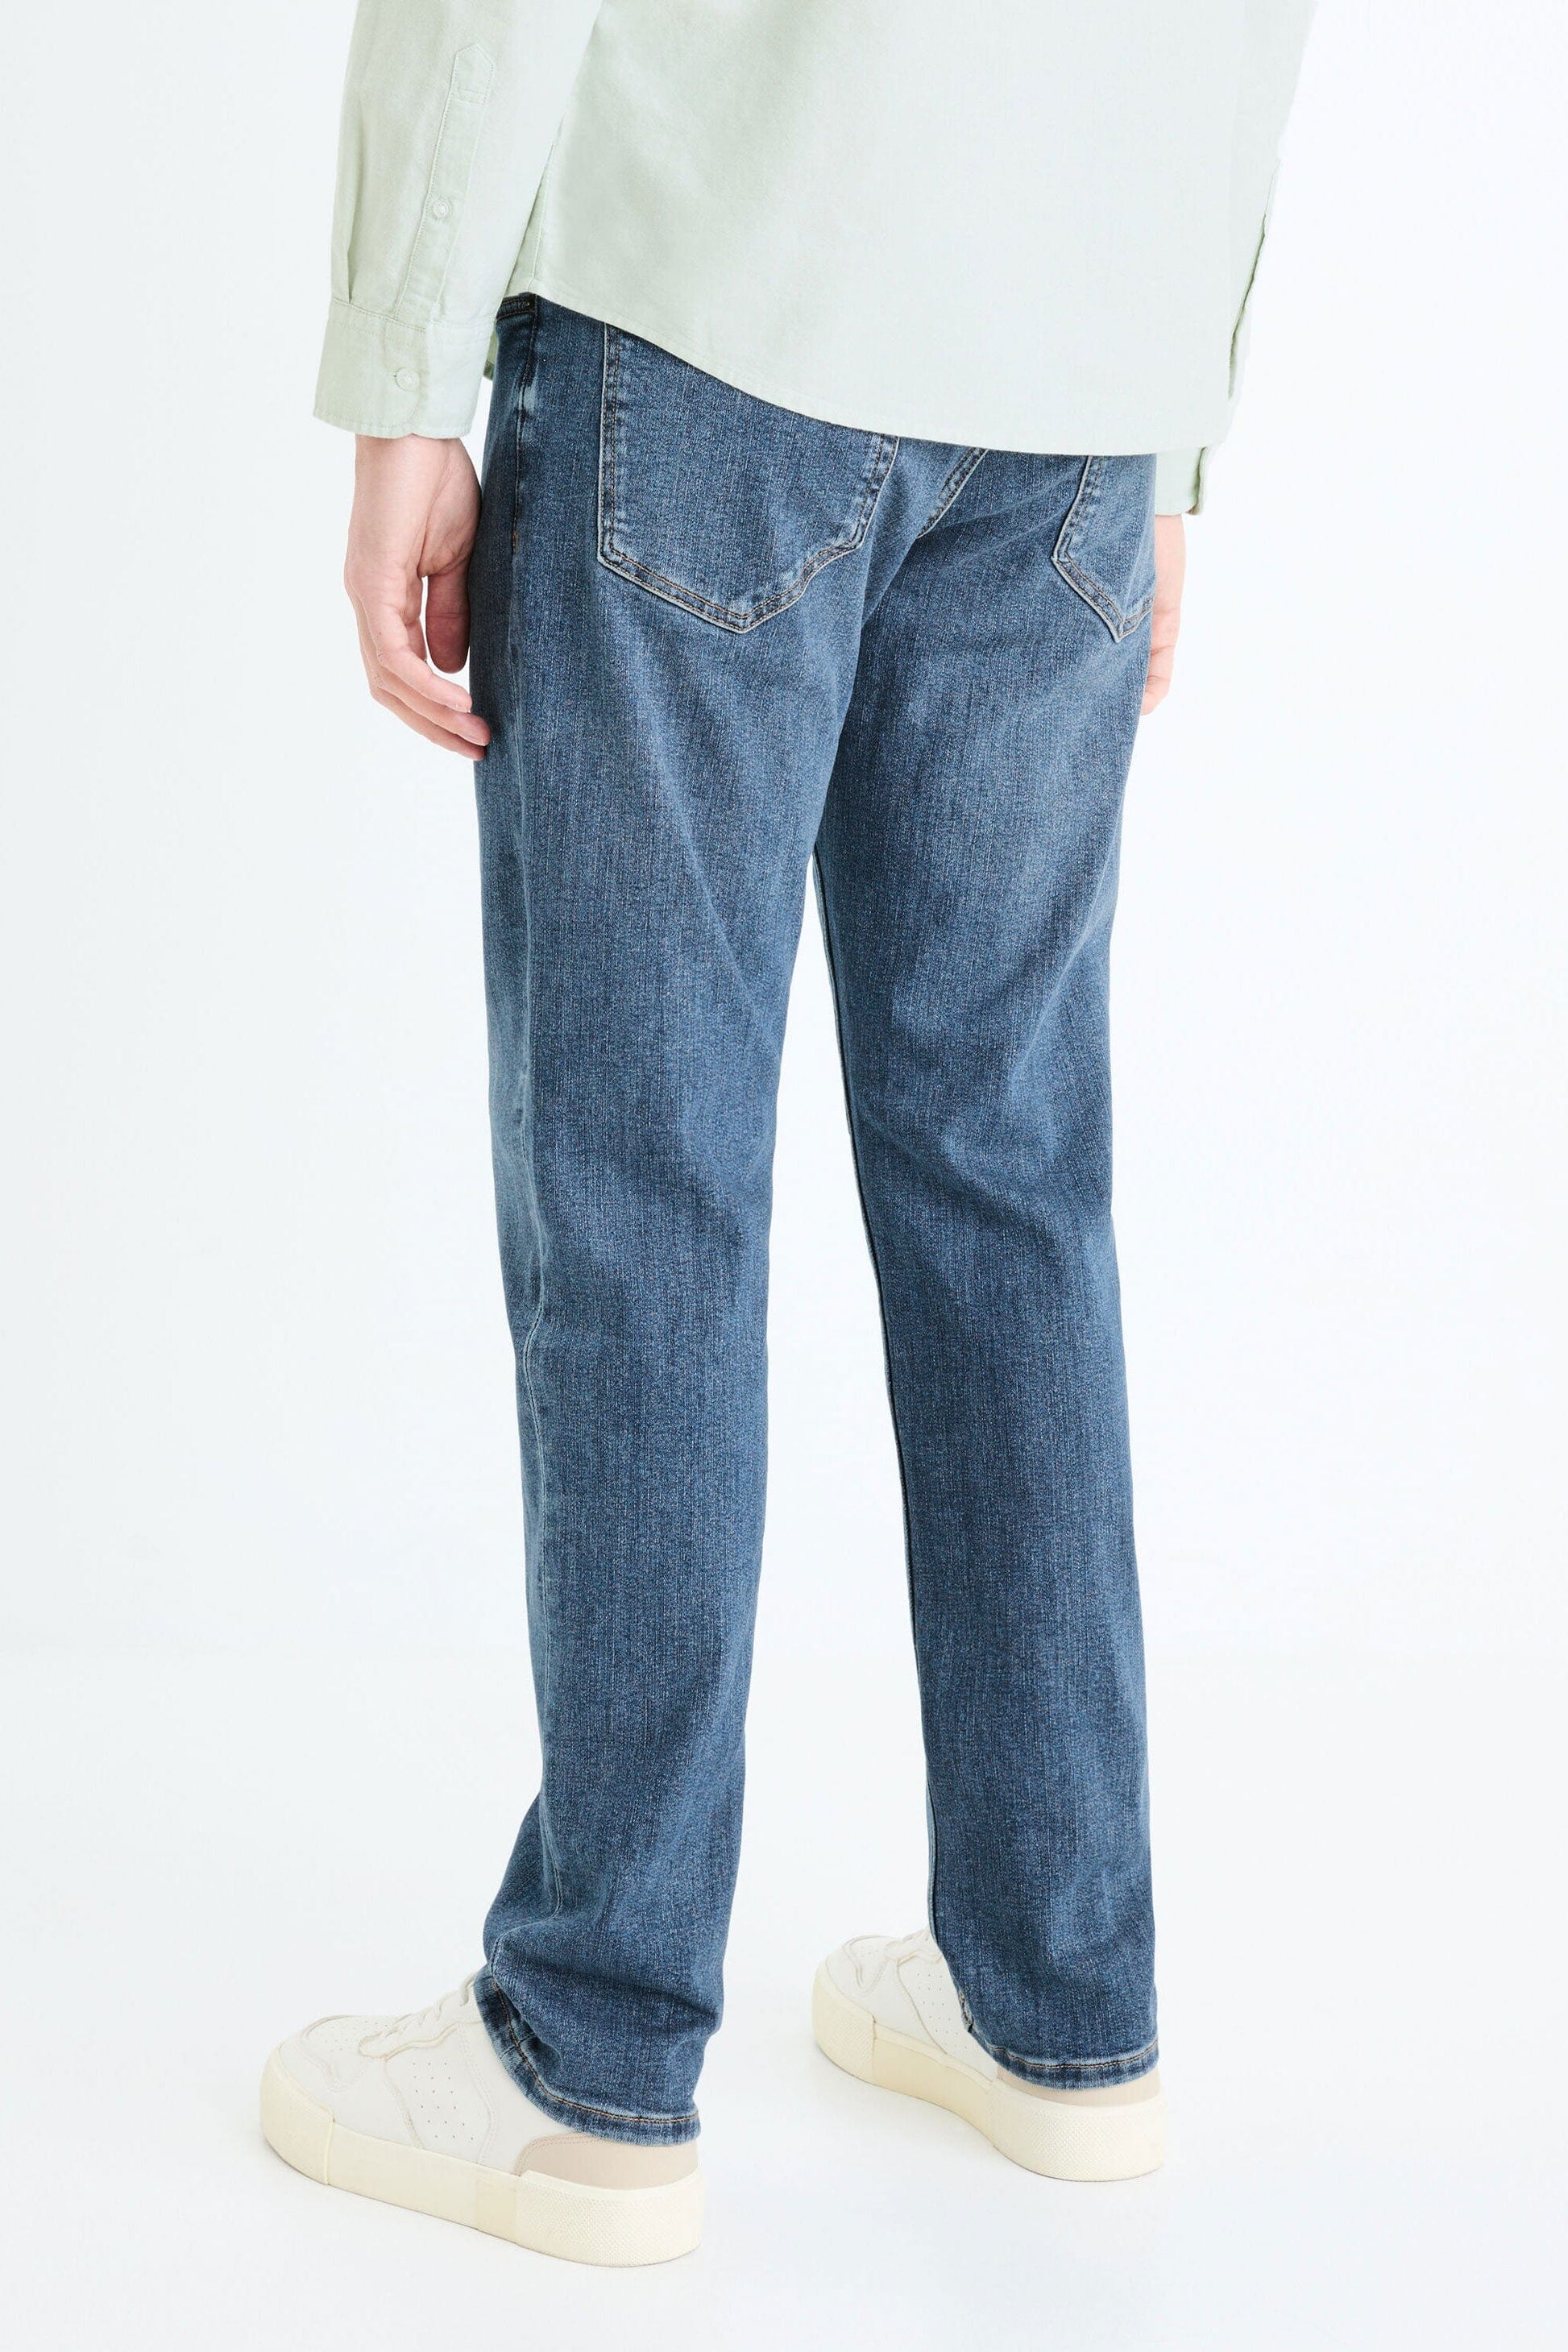 Celio Men's Straight Fit Classic Denim Jeans